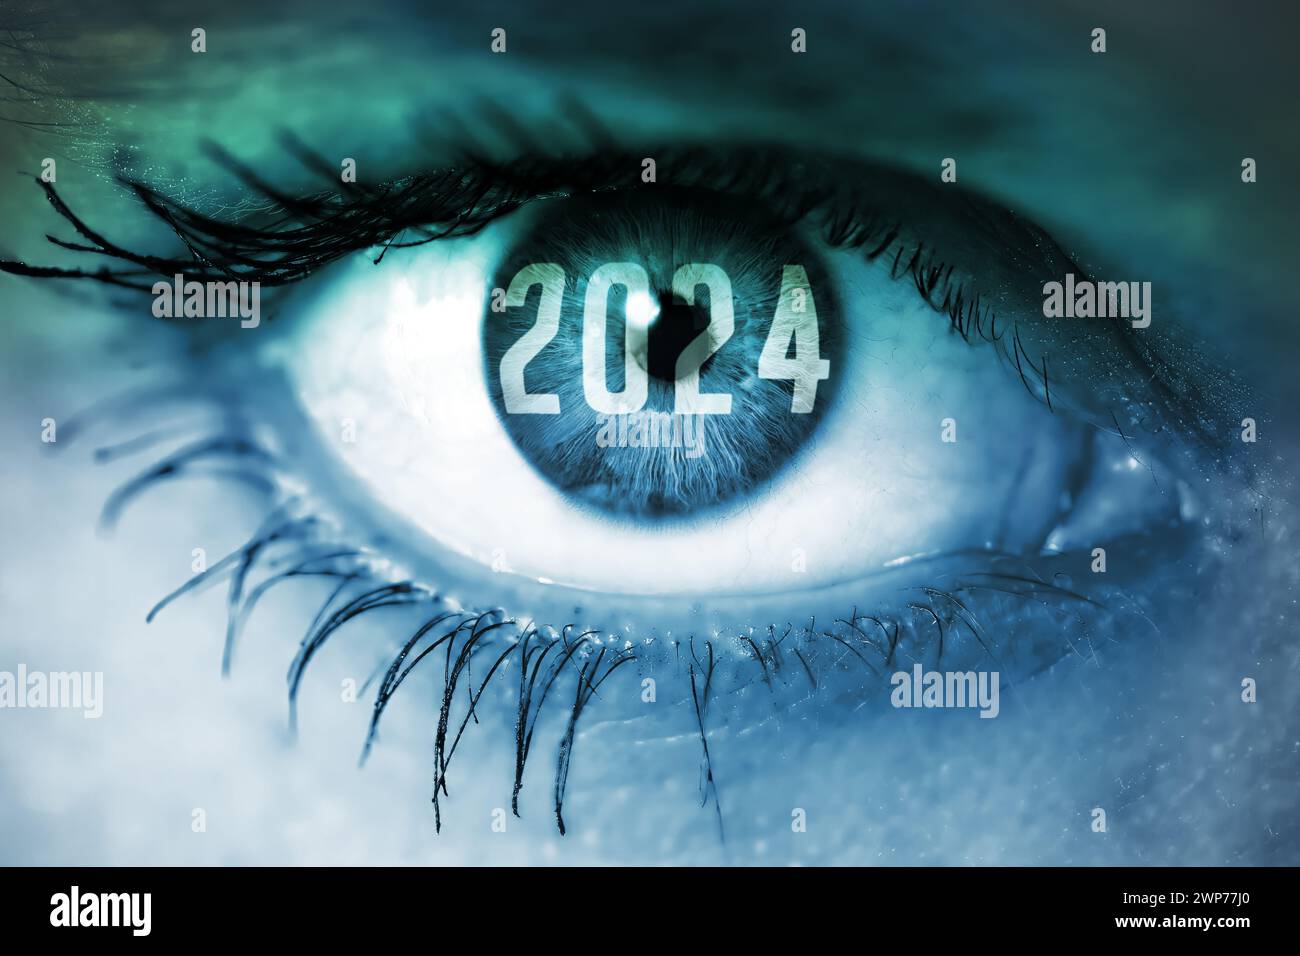 FOTOMONTAGE, Die Jahreszahl 2024 in einem weiblichen Auge, Symbolfoto für das Jahr 2024 und seine Herausforderungen Stock Photo